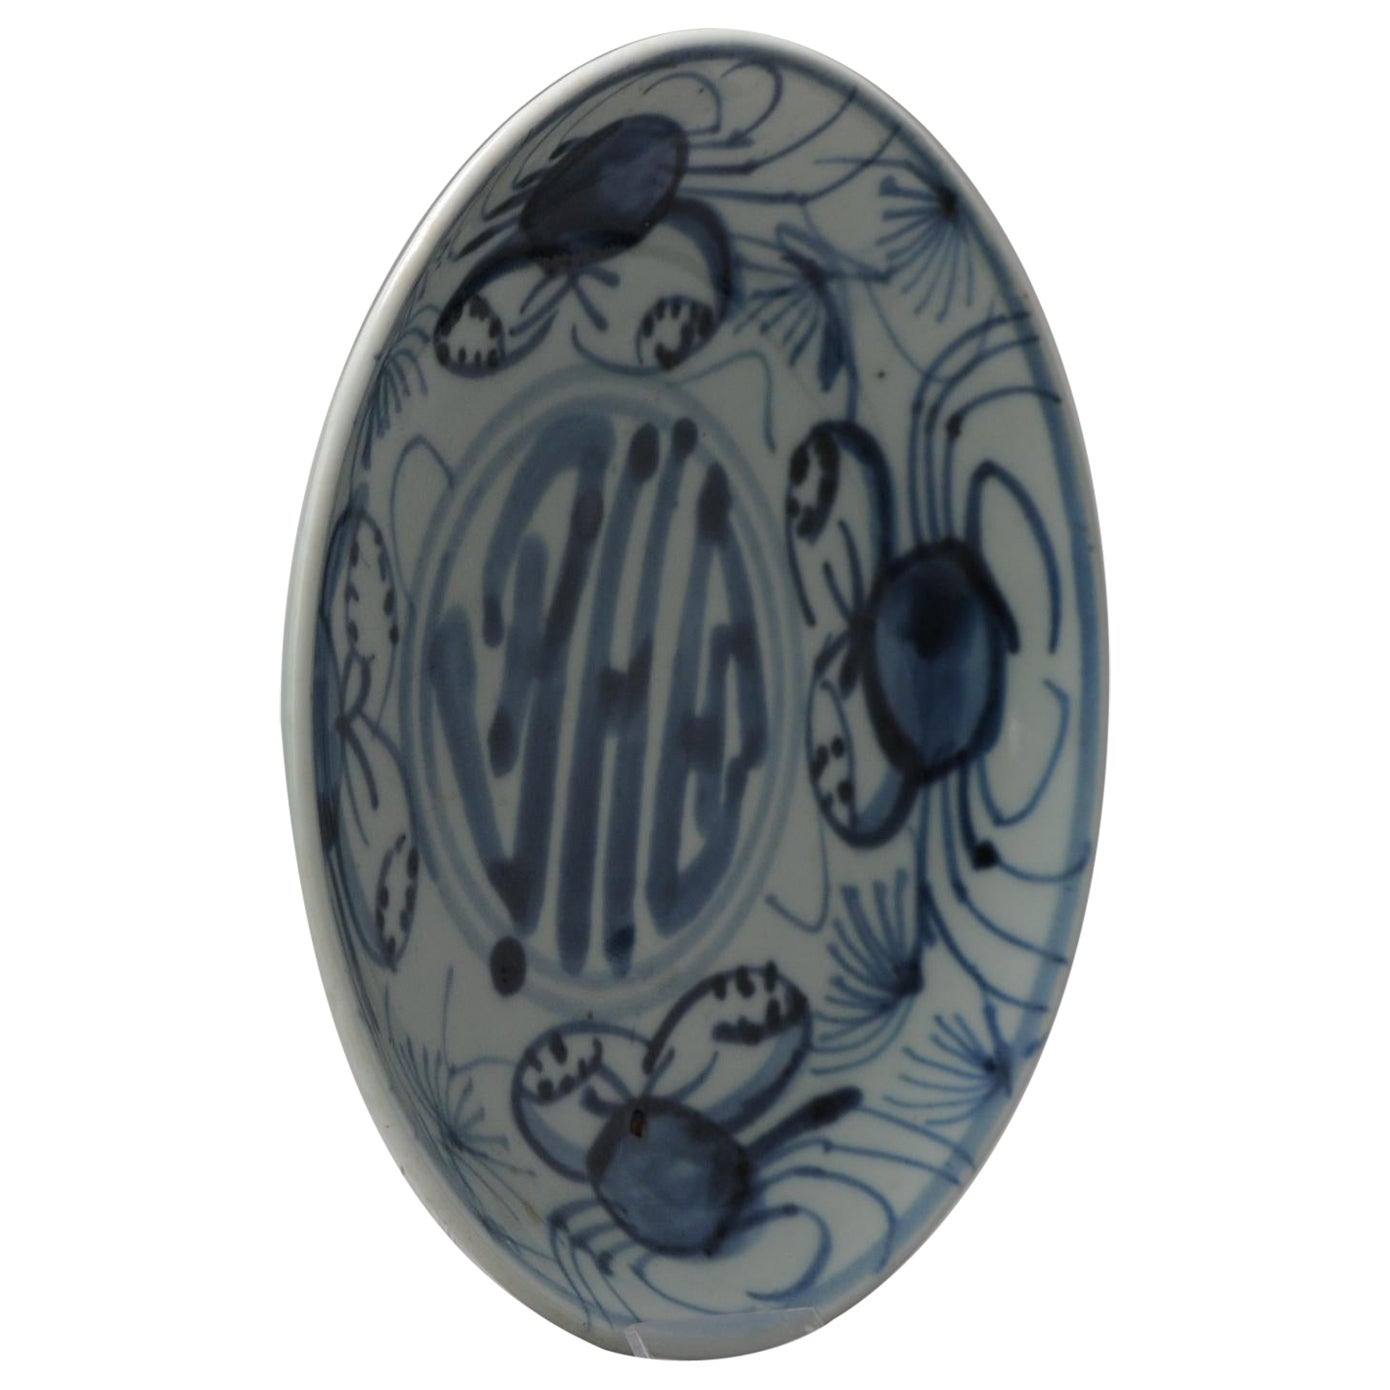 Chinesischer Porzellan-Keramik- Ching-Teller mit Crabs- Kalligrafie, Südostasien, 19. Jahrhundert